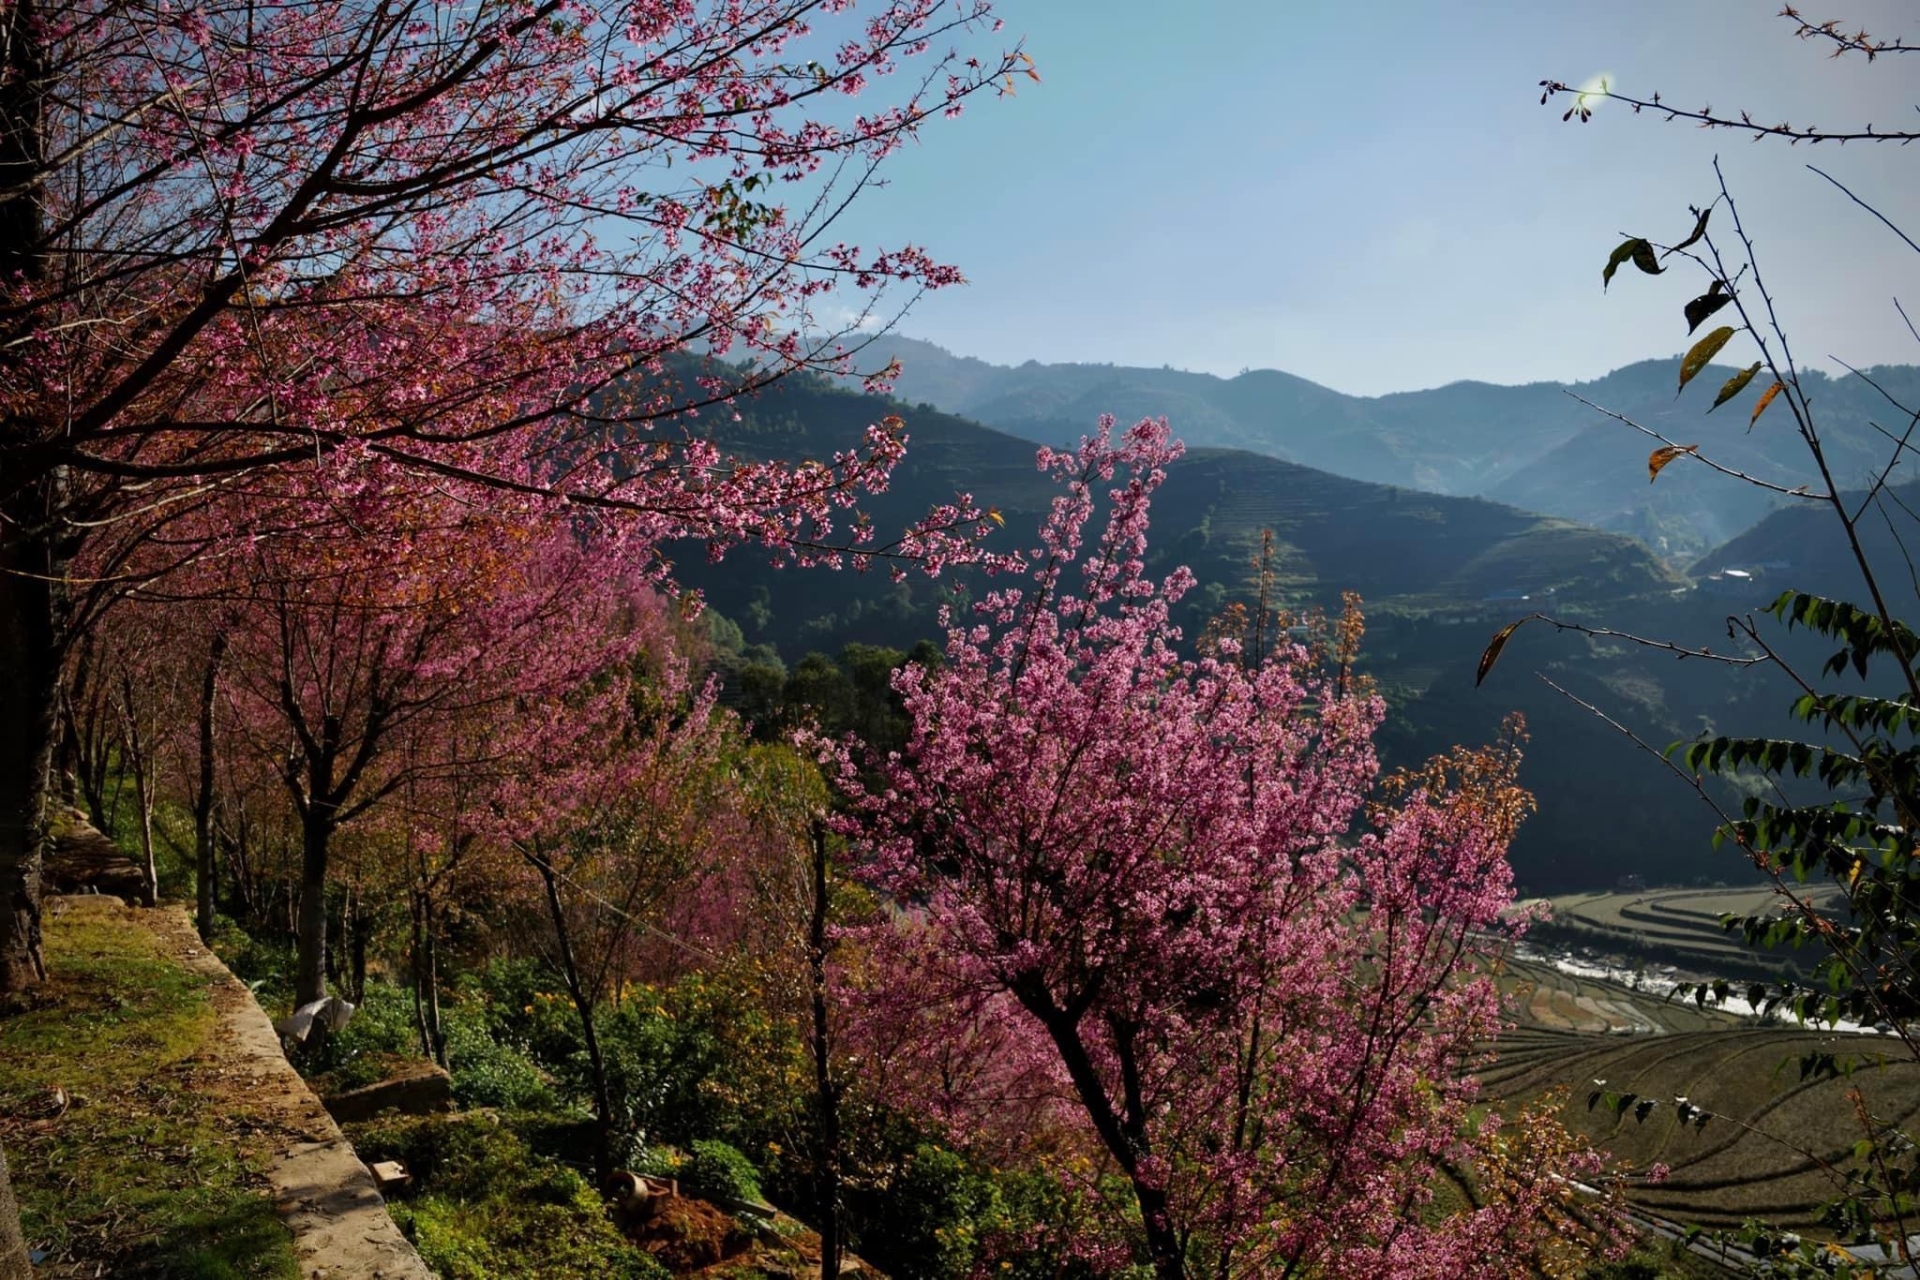 Chiêm ngưỡng sắc hoa tớ dày nhuộm hồng núi rừng Mù Cang Chải - Ảnh 3.